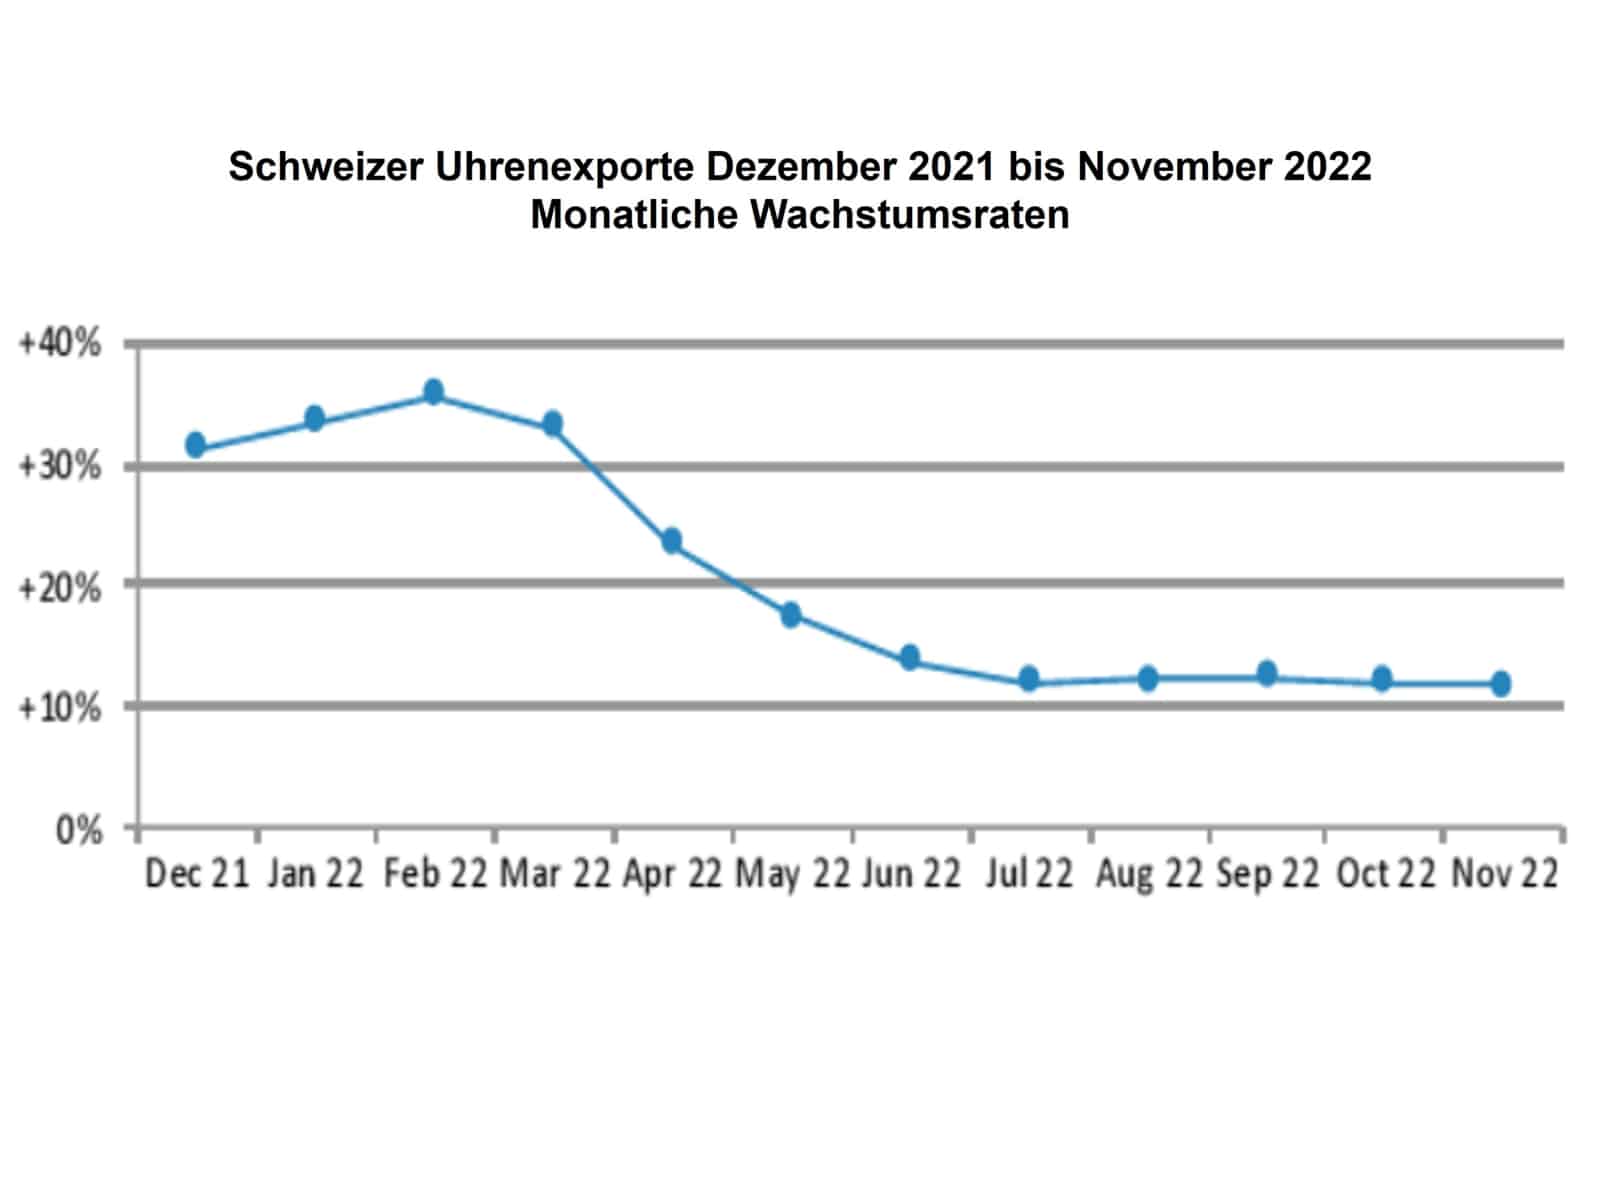 Schweizer Uhrenexporte monatliche Wachstumsraten Dezember 2021 bis November 2022 (C) FHS